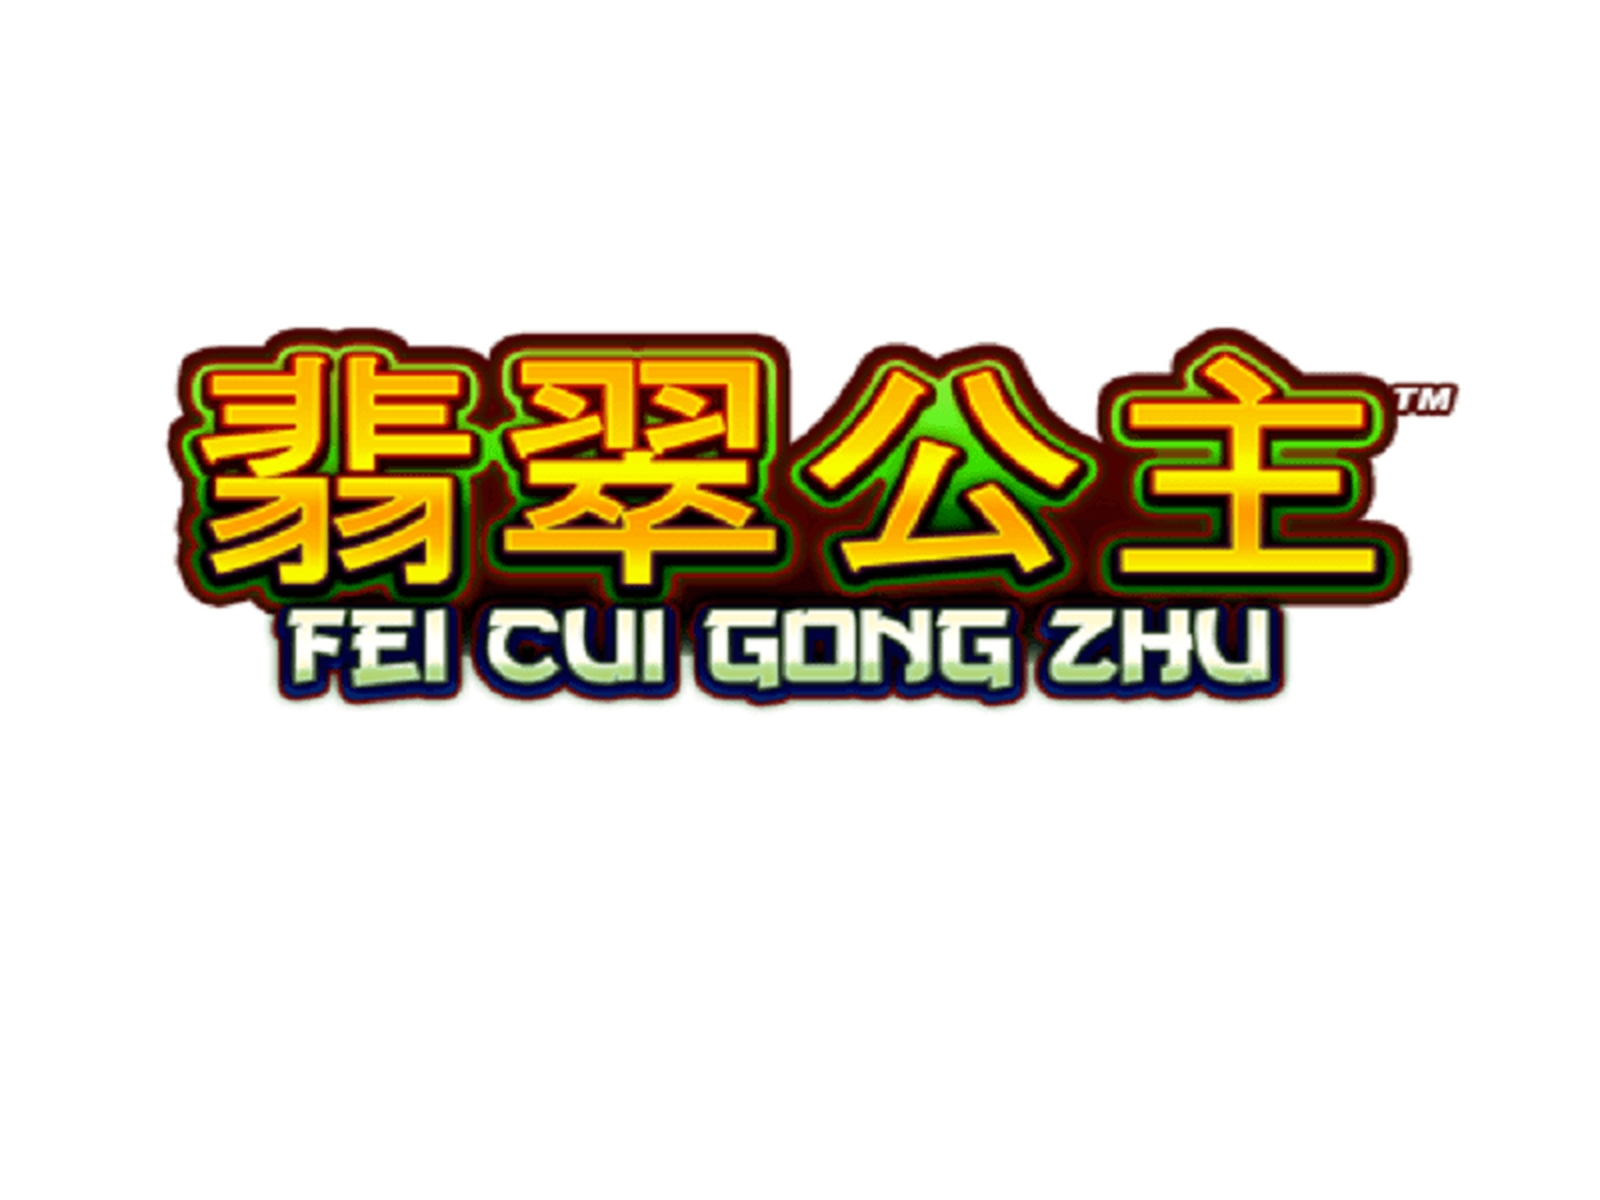 Fei Cui Gong Zhu demo